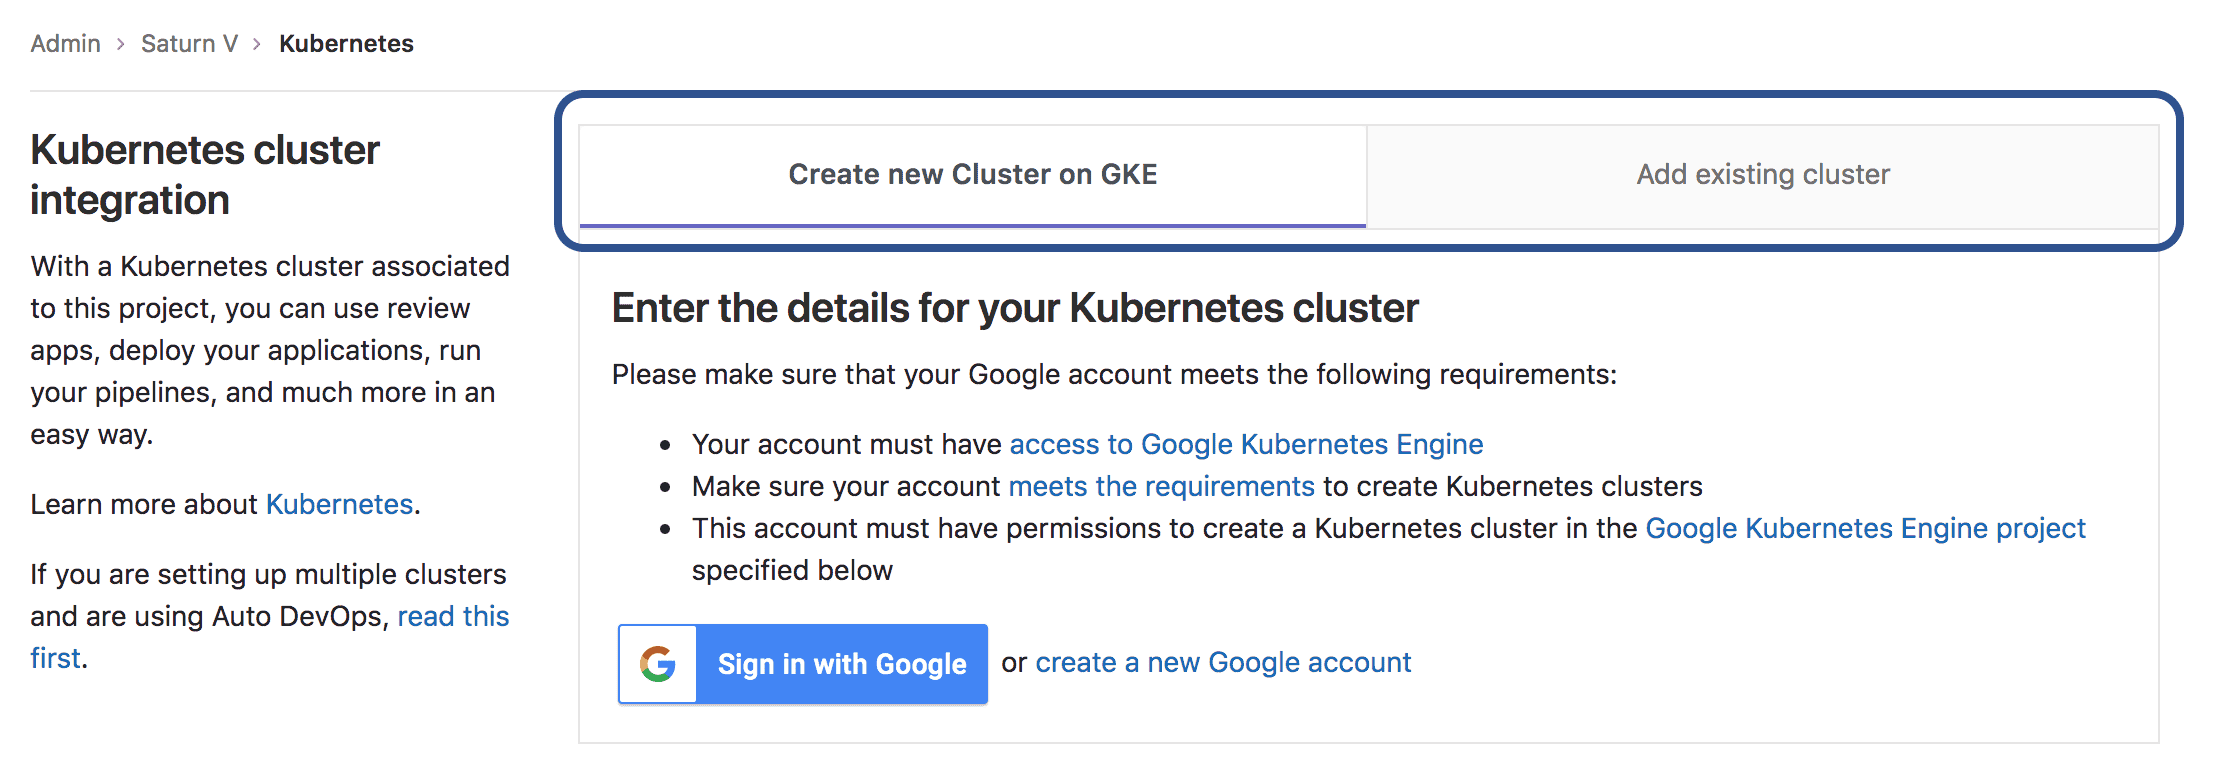 Improved Kubernetes Cluster page design